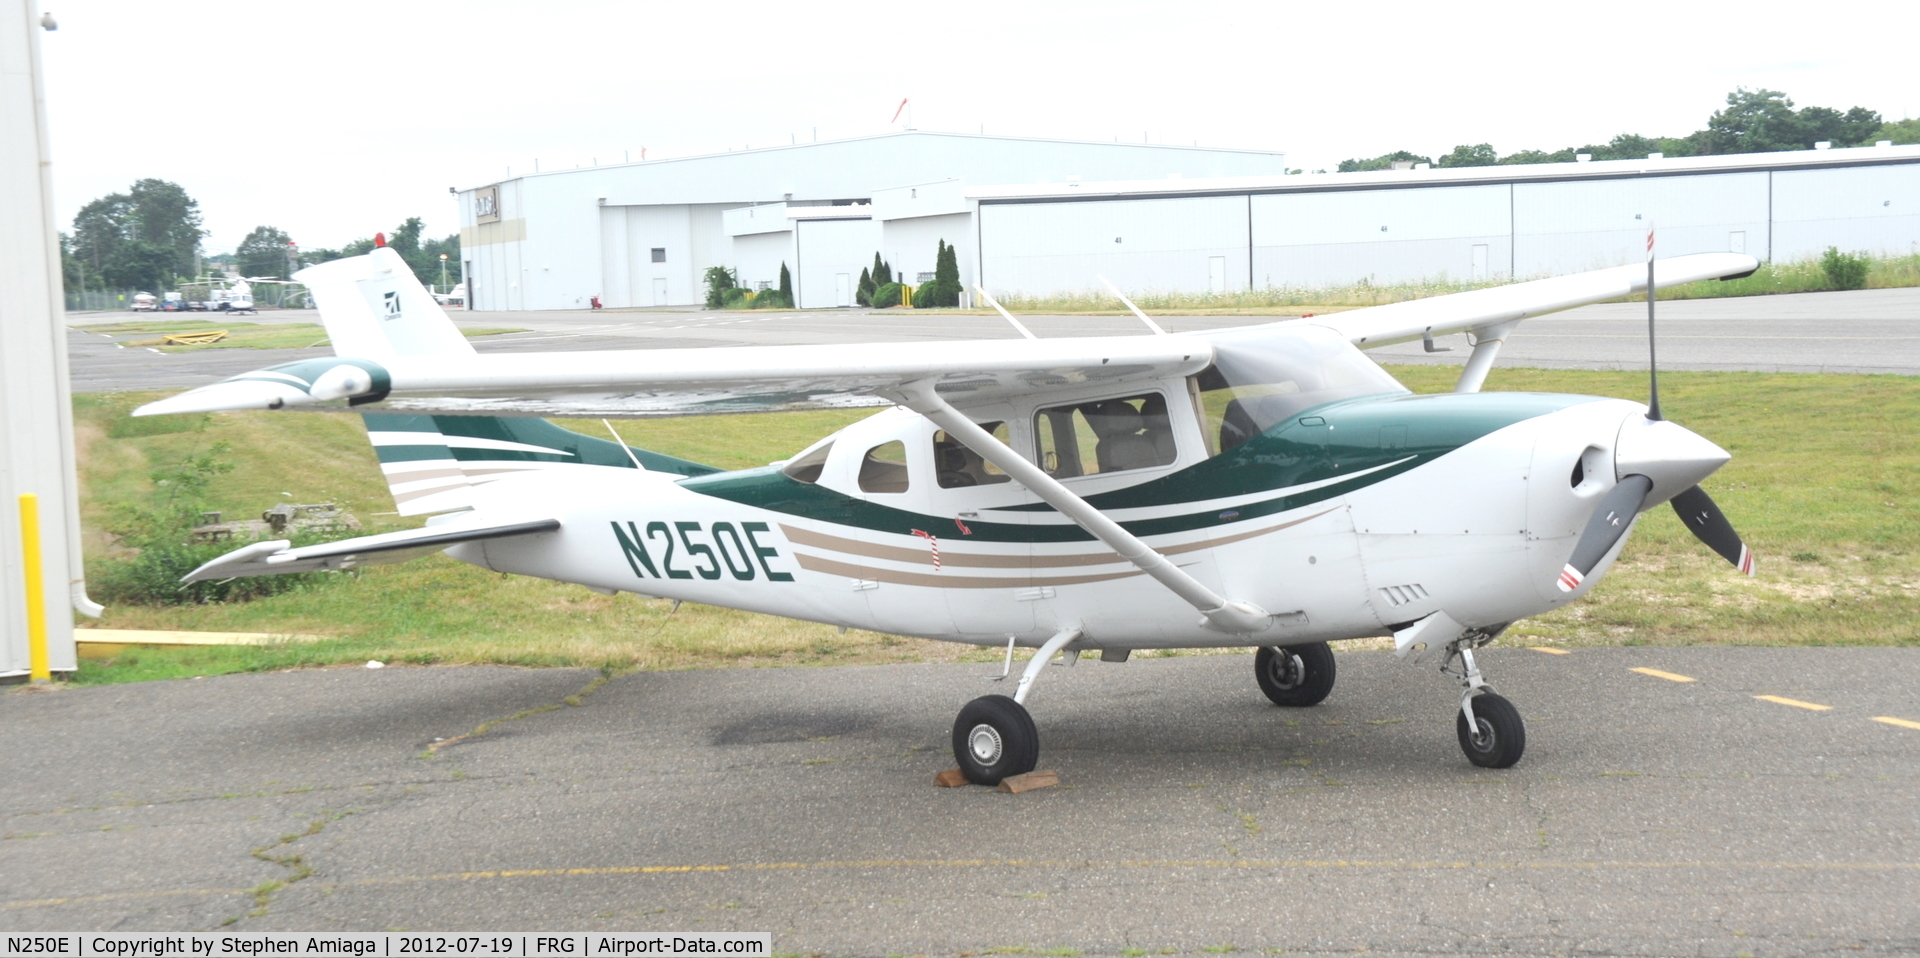 N250E, 2005 Cessna 206H Stationair C/N 20608250, Atlantic Ramp